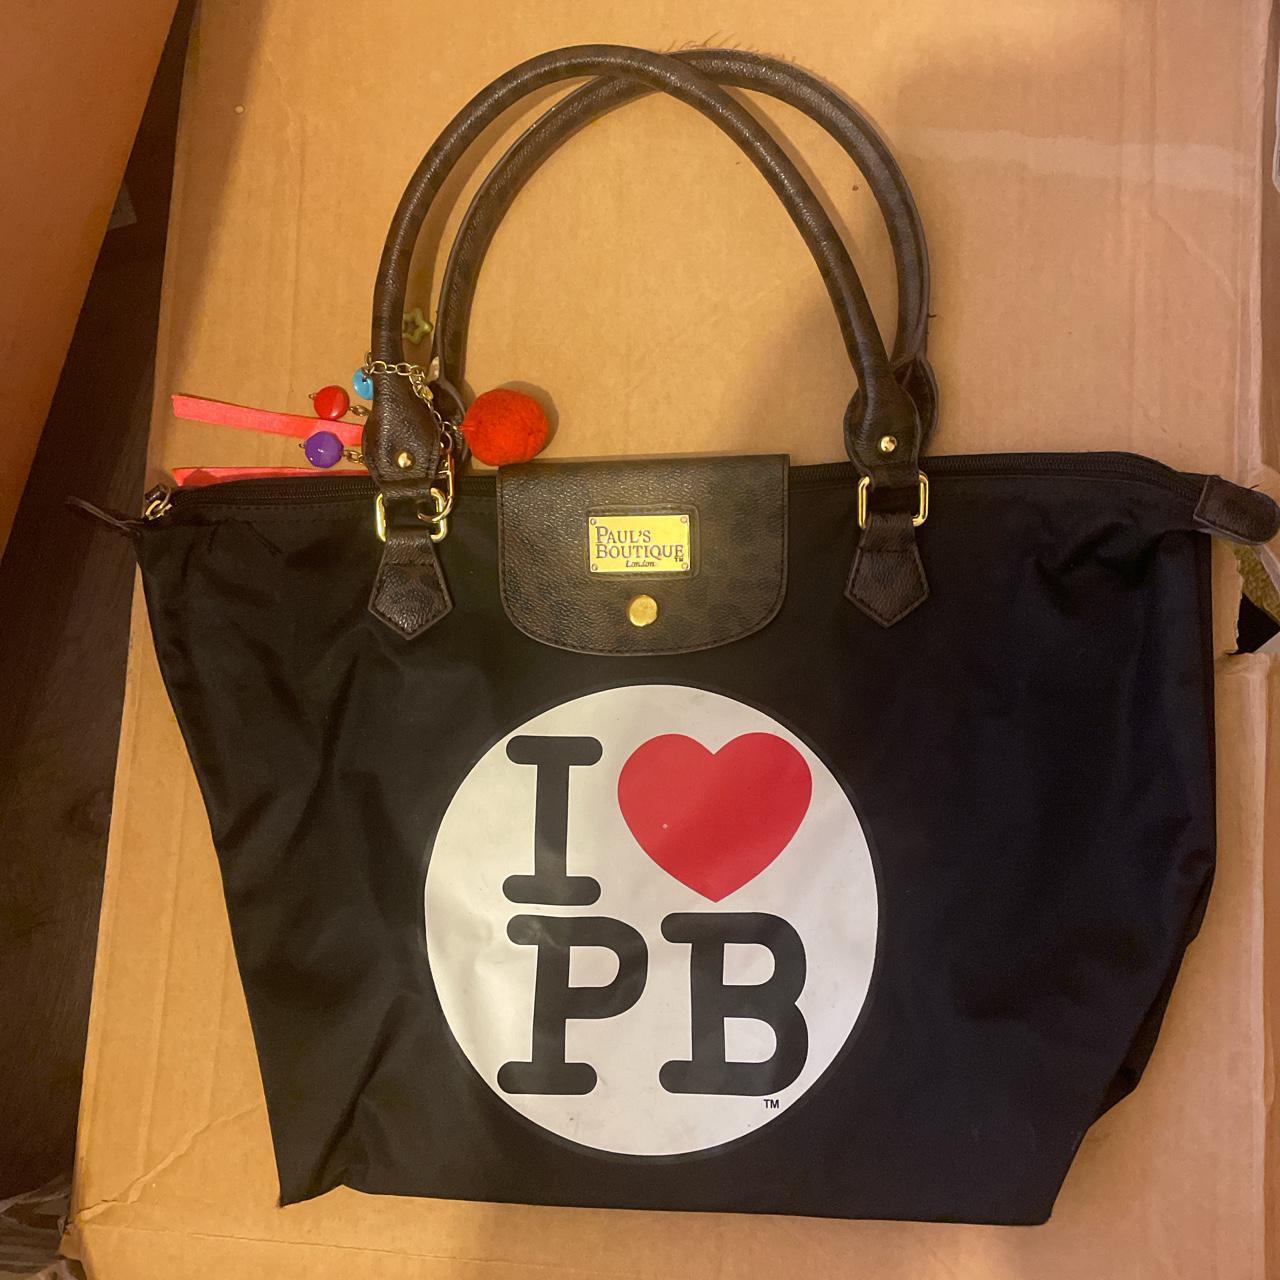 Paul's Boutique Bag! Paul's Boutique I love BP bag, - Depop